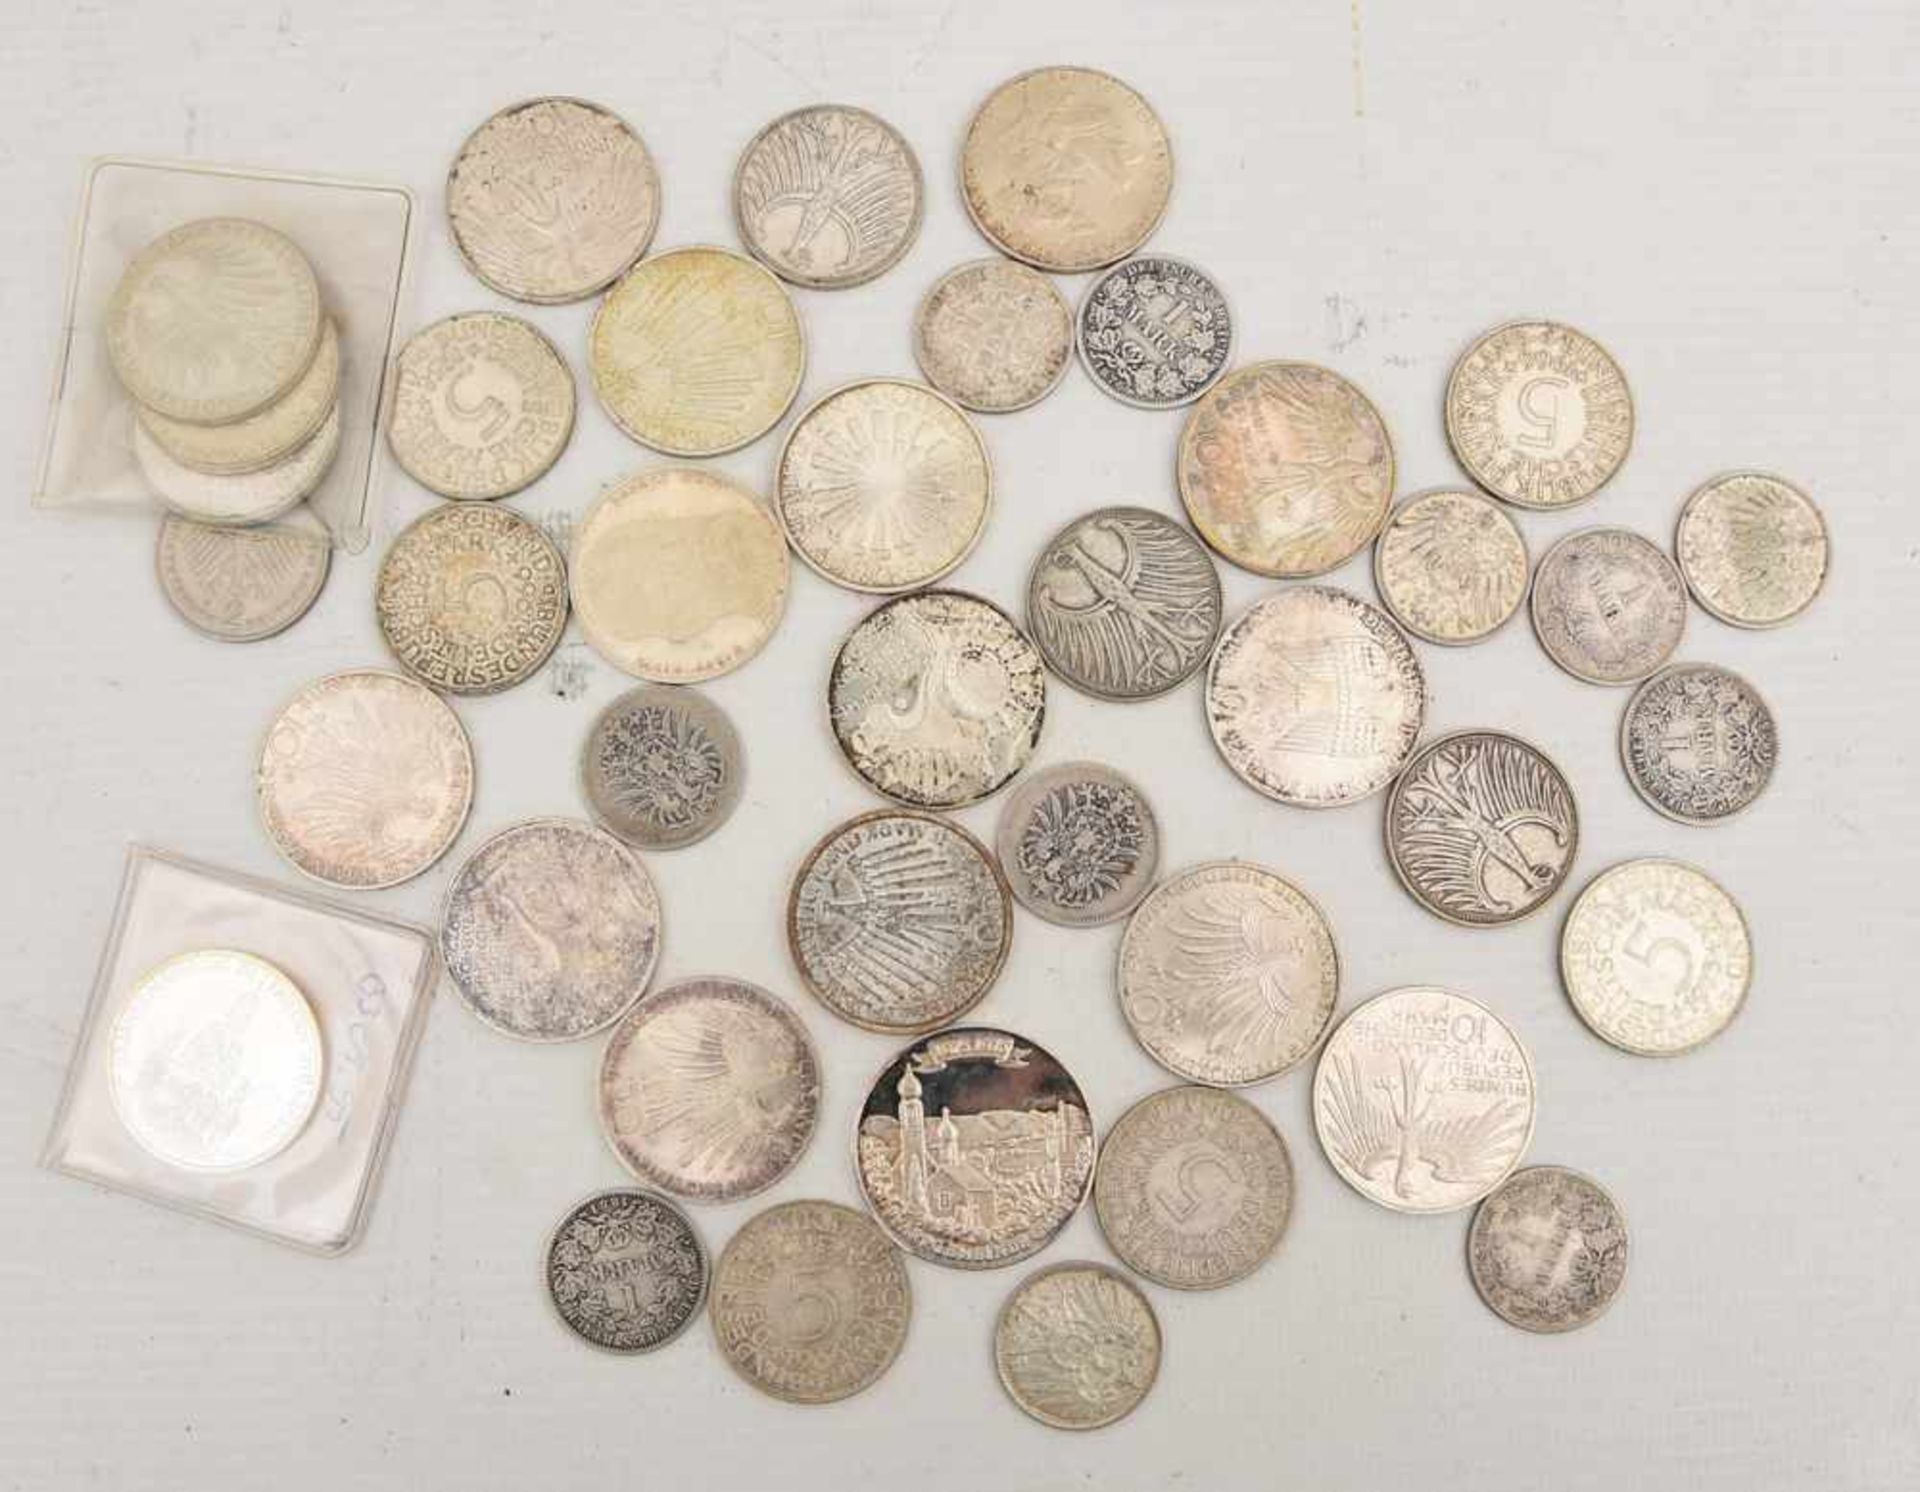 KONV. AUS DEUTSCHEN MÜNZEN, Erinnerungsmünzen, Markstücke, Sondermünzen. 1-3 cm.